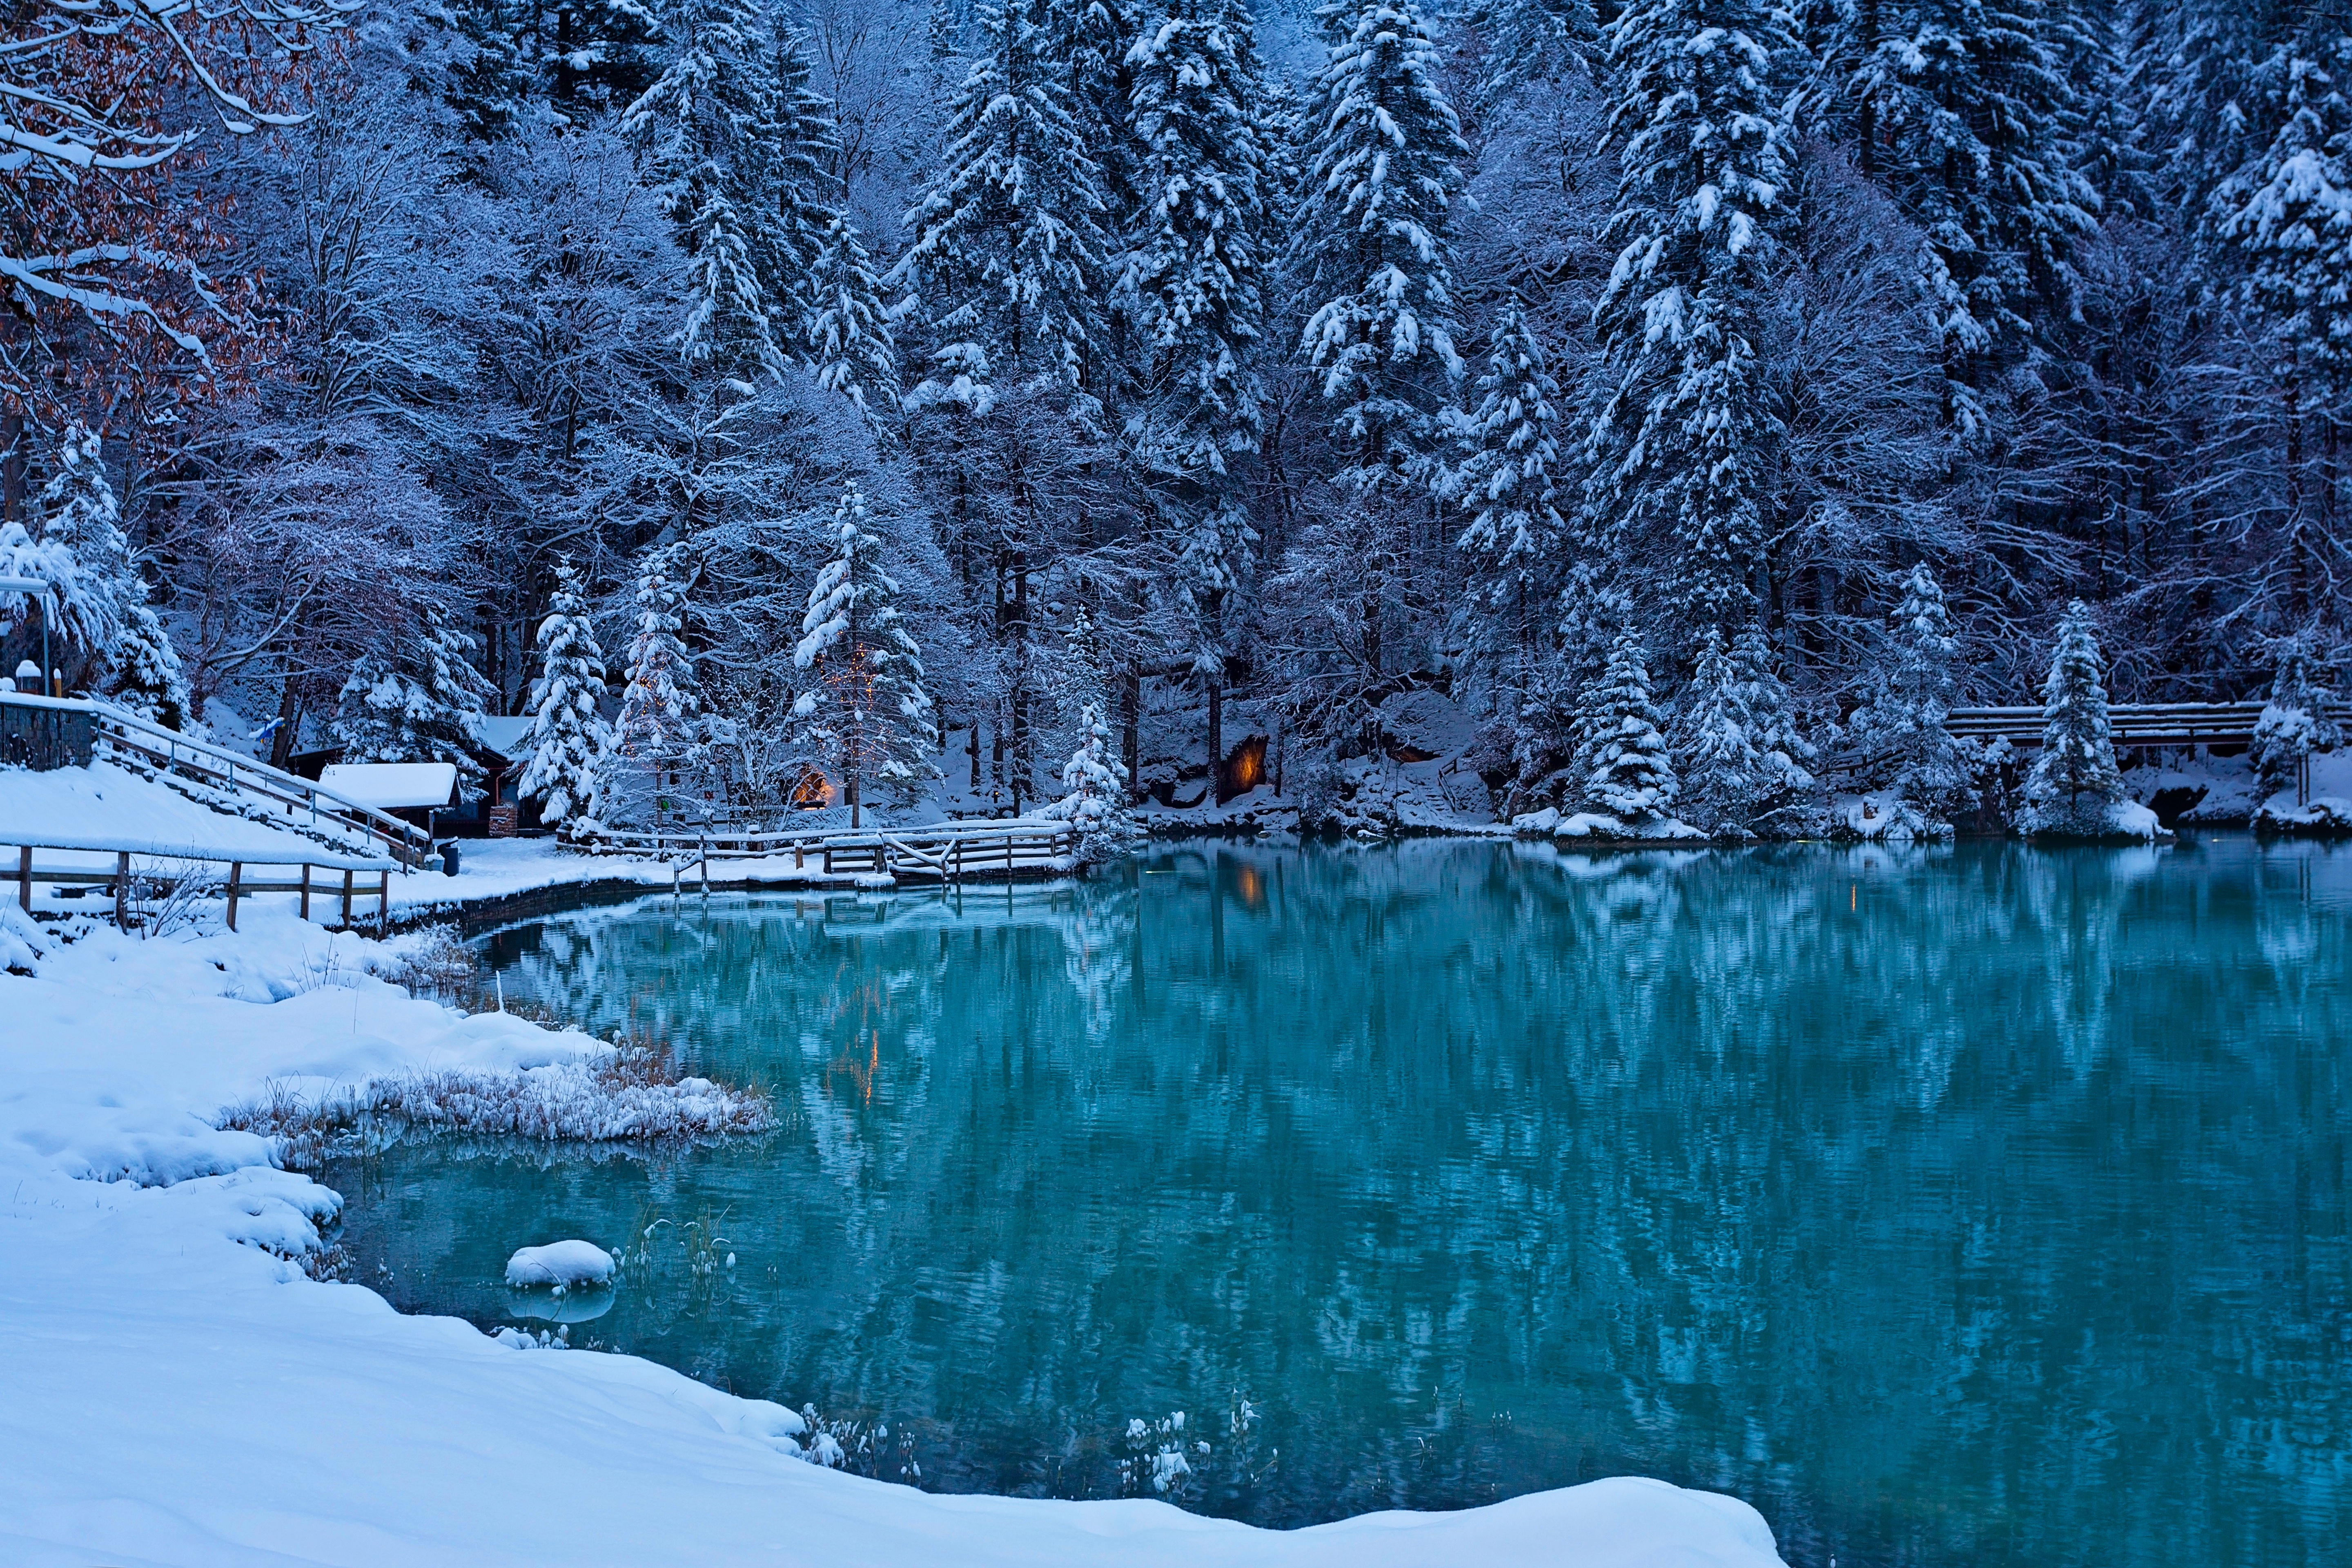 Скачать картинку Зима, Снег, Озеро, Фотографии в телефон бесплатно.